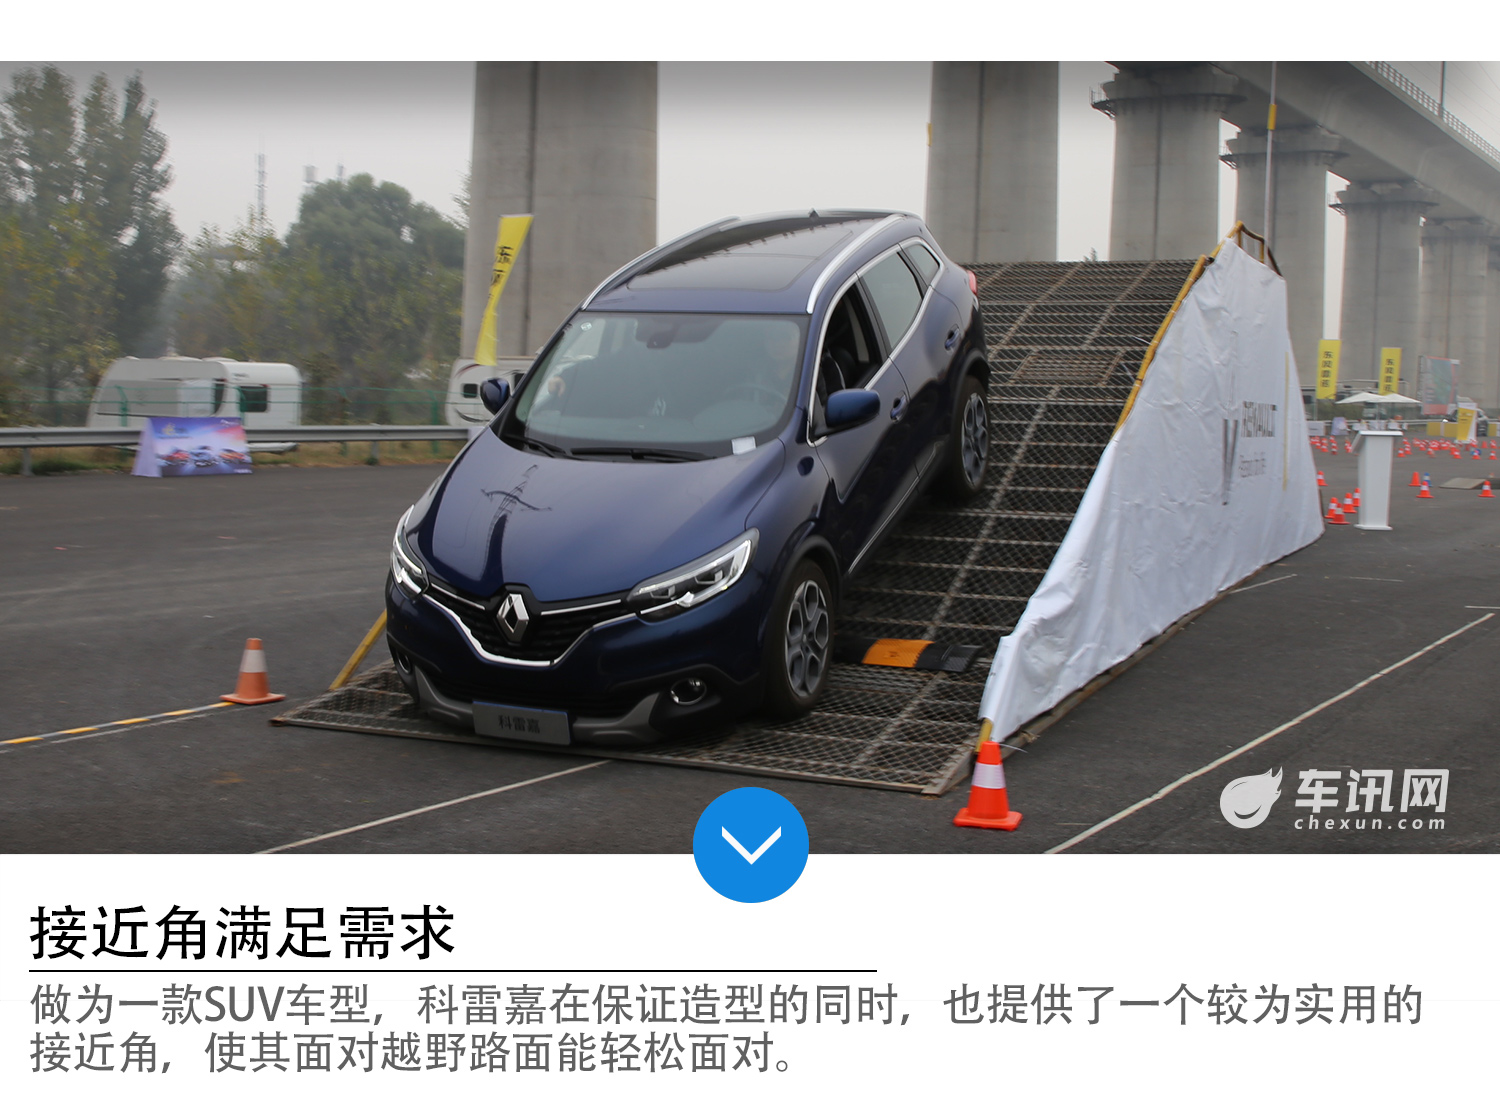 雷诺SUV家族赛道公园北京站 体验法式激情